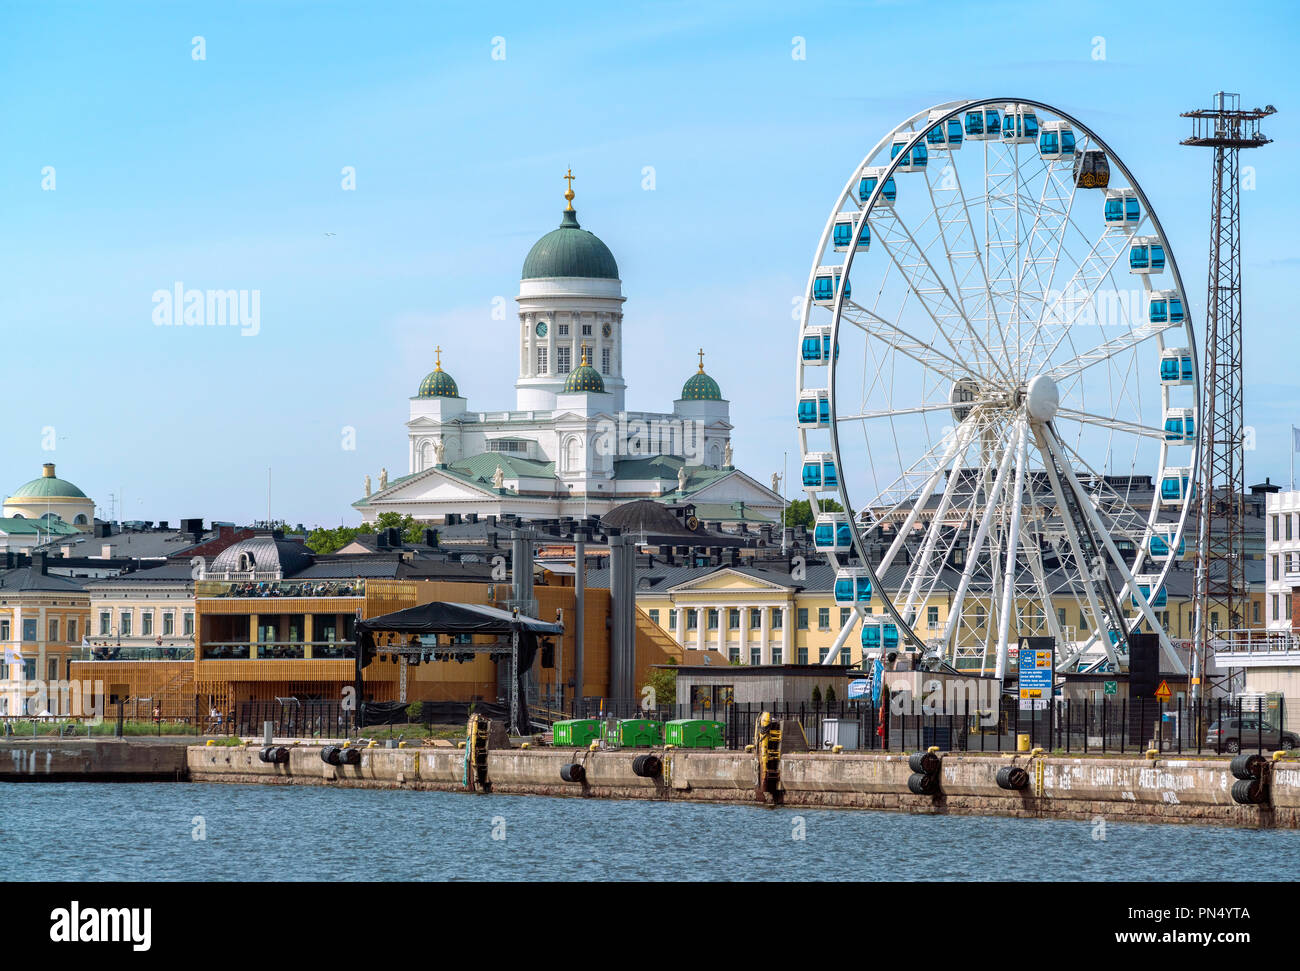 Les toits de la cathédrale d'Helsinki avec Sky et Skywheel ferriswheel Roue Ferris roue en été. Waterfront Helsinki Finlande Banque D'Images